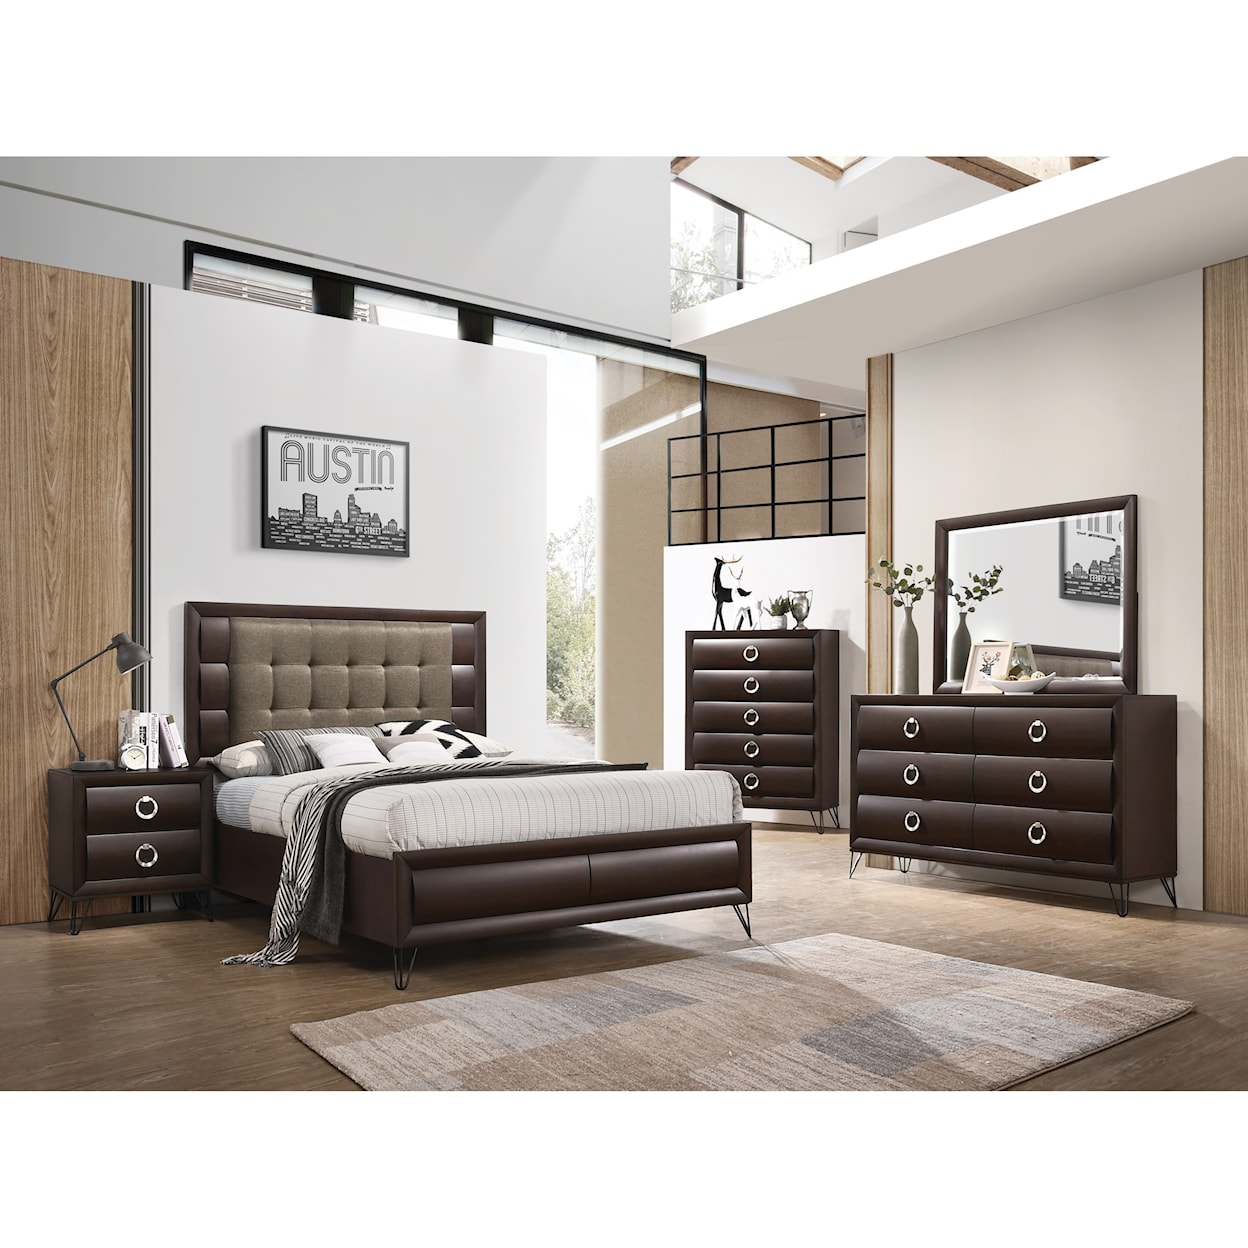 Acme Furniture Tablita 7pc Queen Bedroom Group